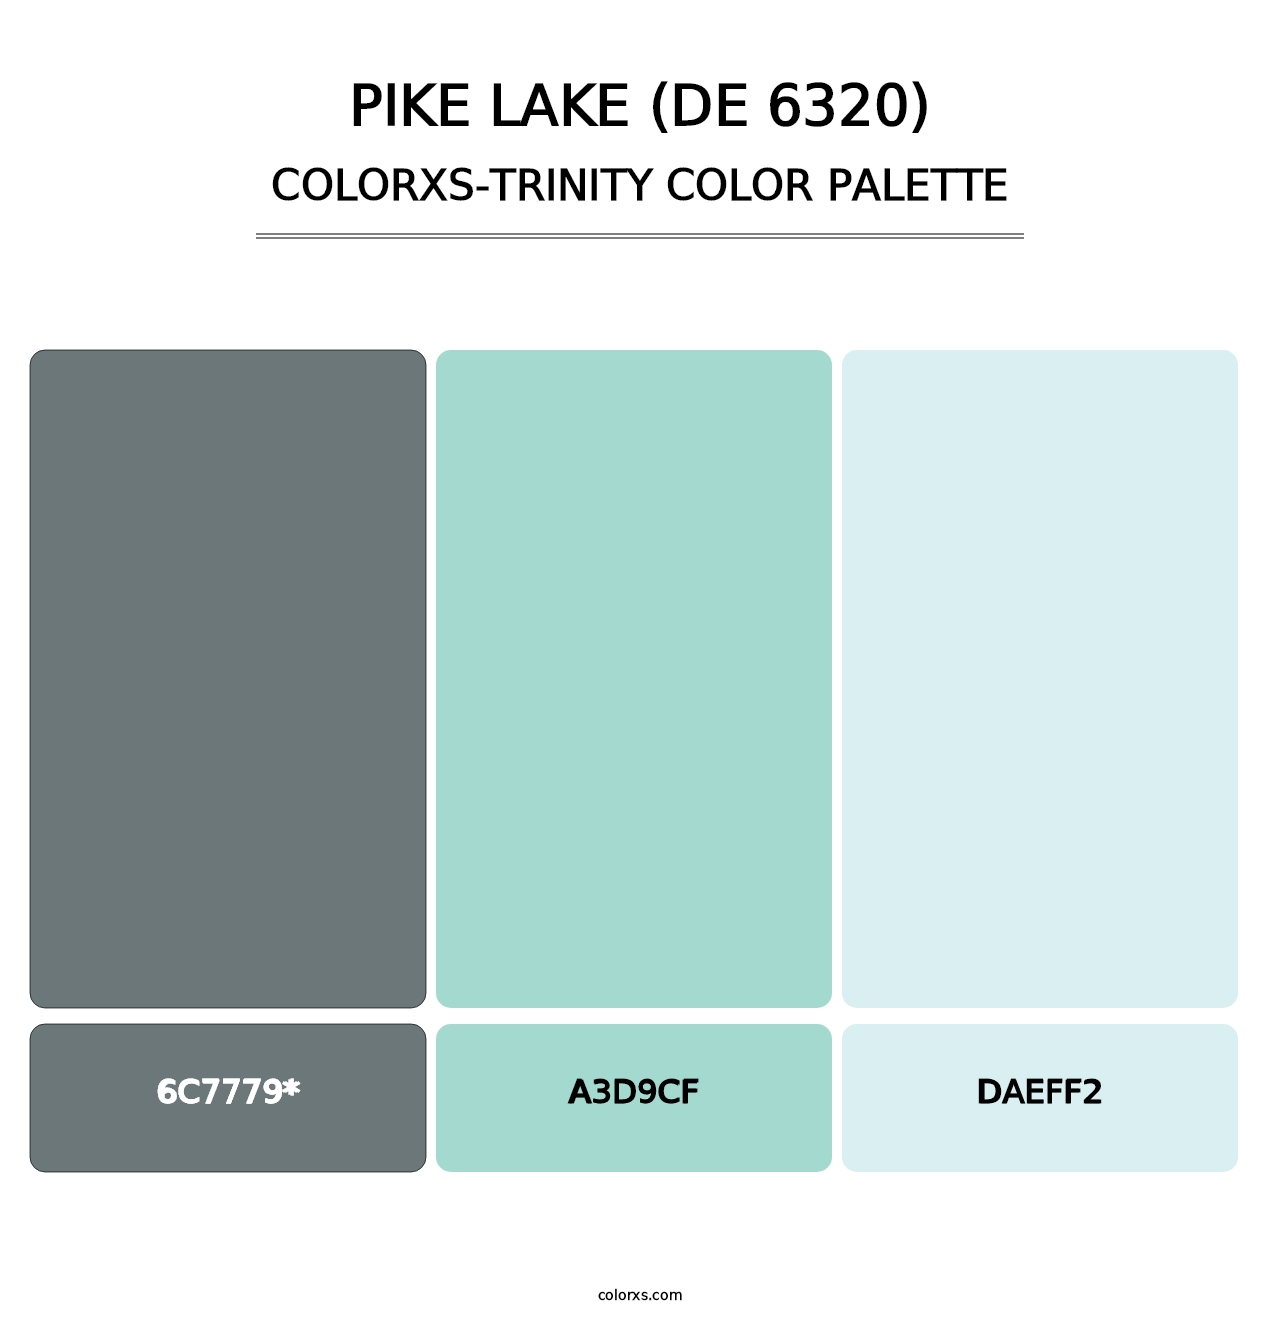 Pike Lake (DE 6320) - Colorxs Trinity Palette